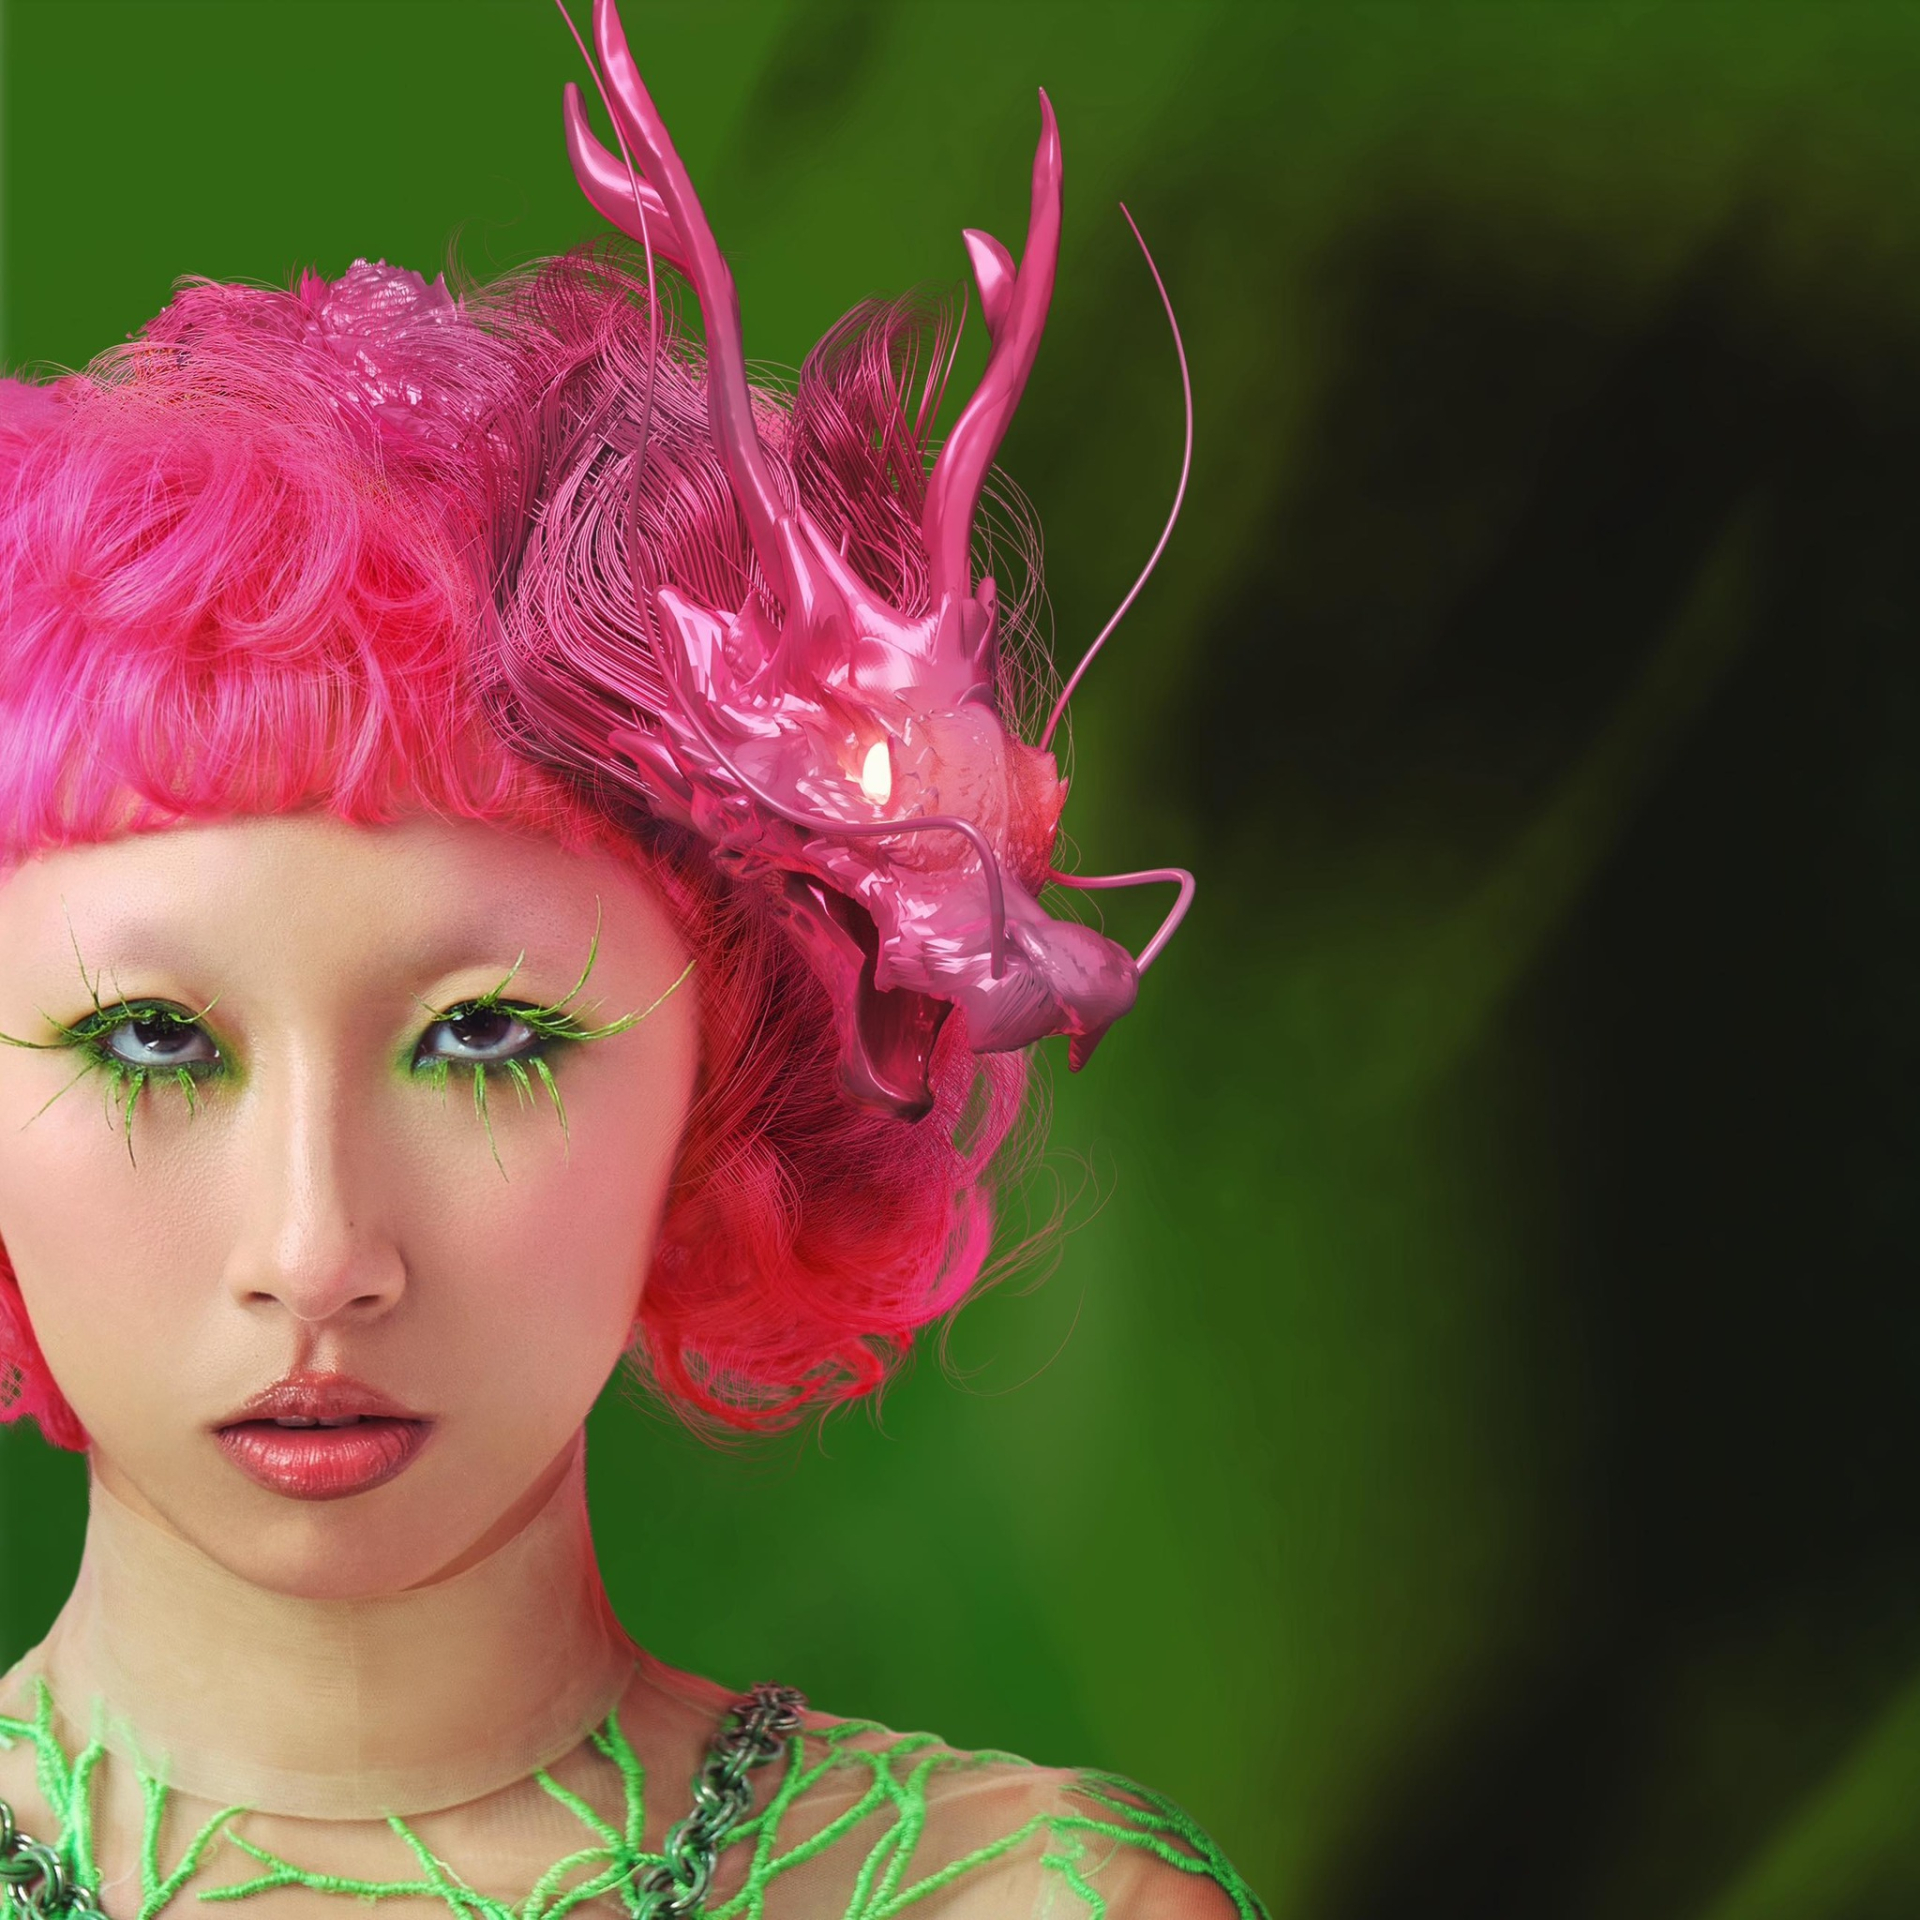 Trang Hý lại 'chơi trội' với màu tóc hồng neon tại sự kiện, không phải nhân vật chính nhưng nổi bật nhất - ảnh 3